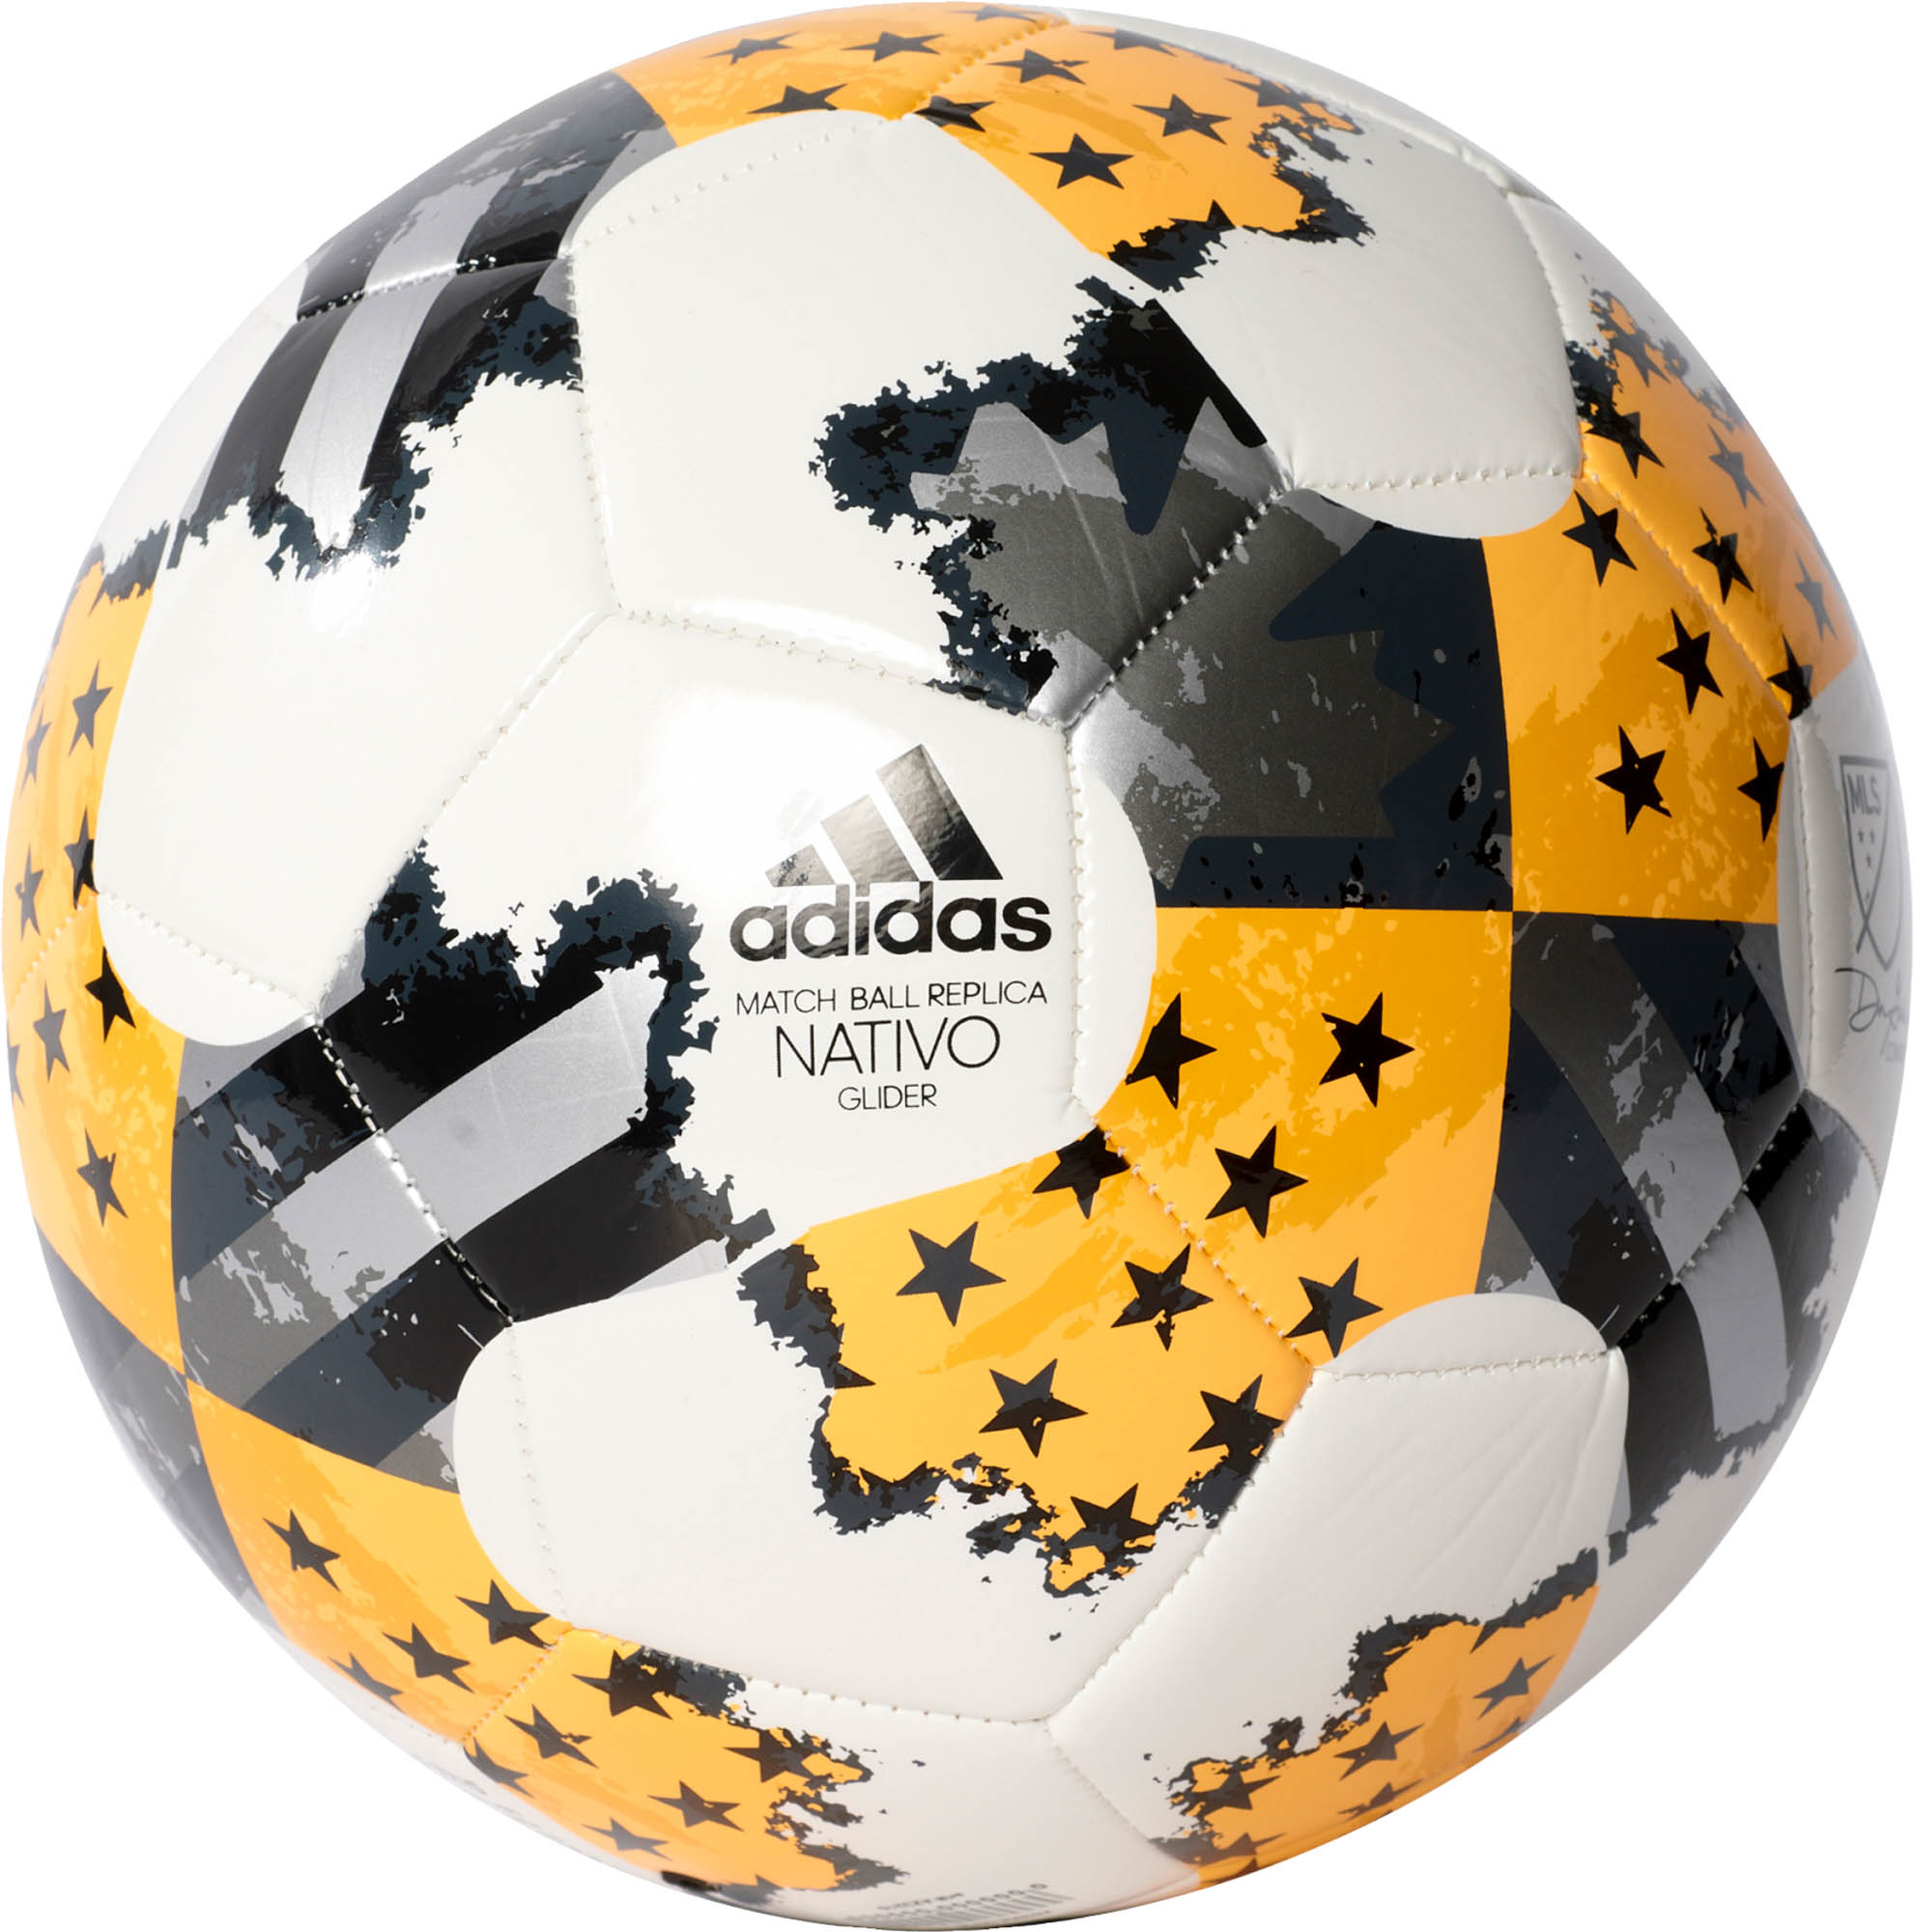 adidas mls glider soccer ball